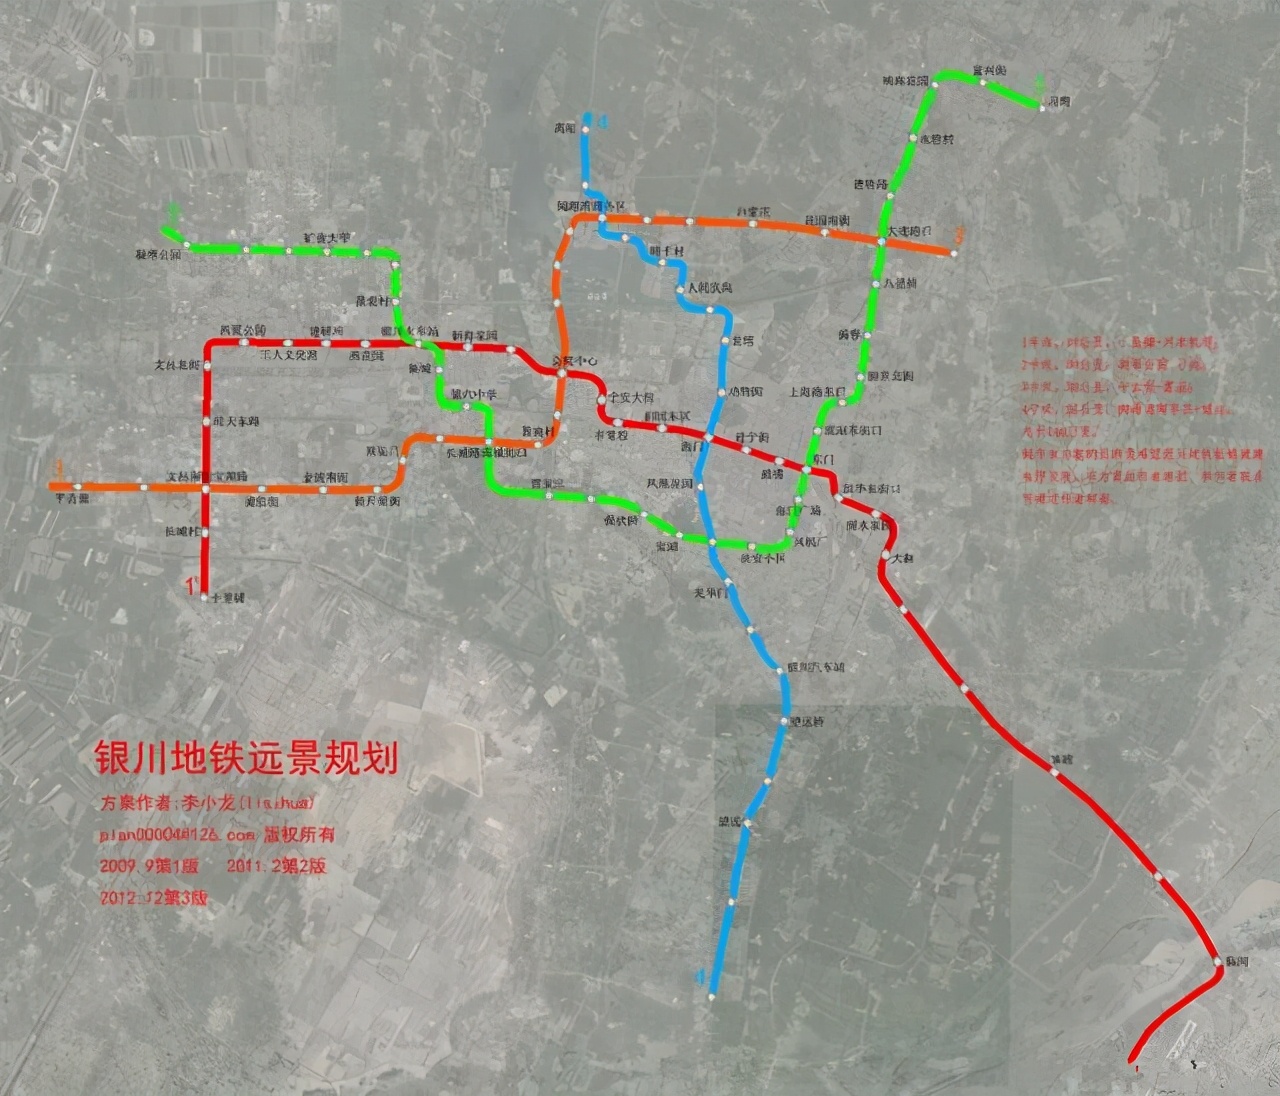 银川轨道交通网规划由6条放射线路组成,线网总长227.8公里